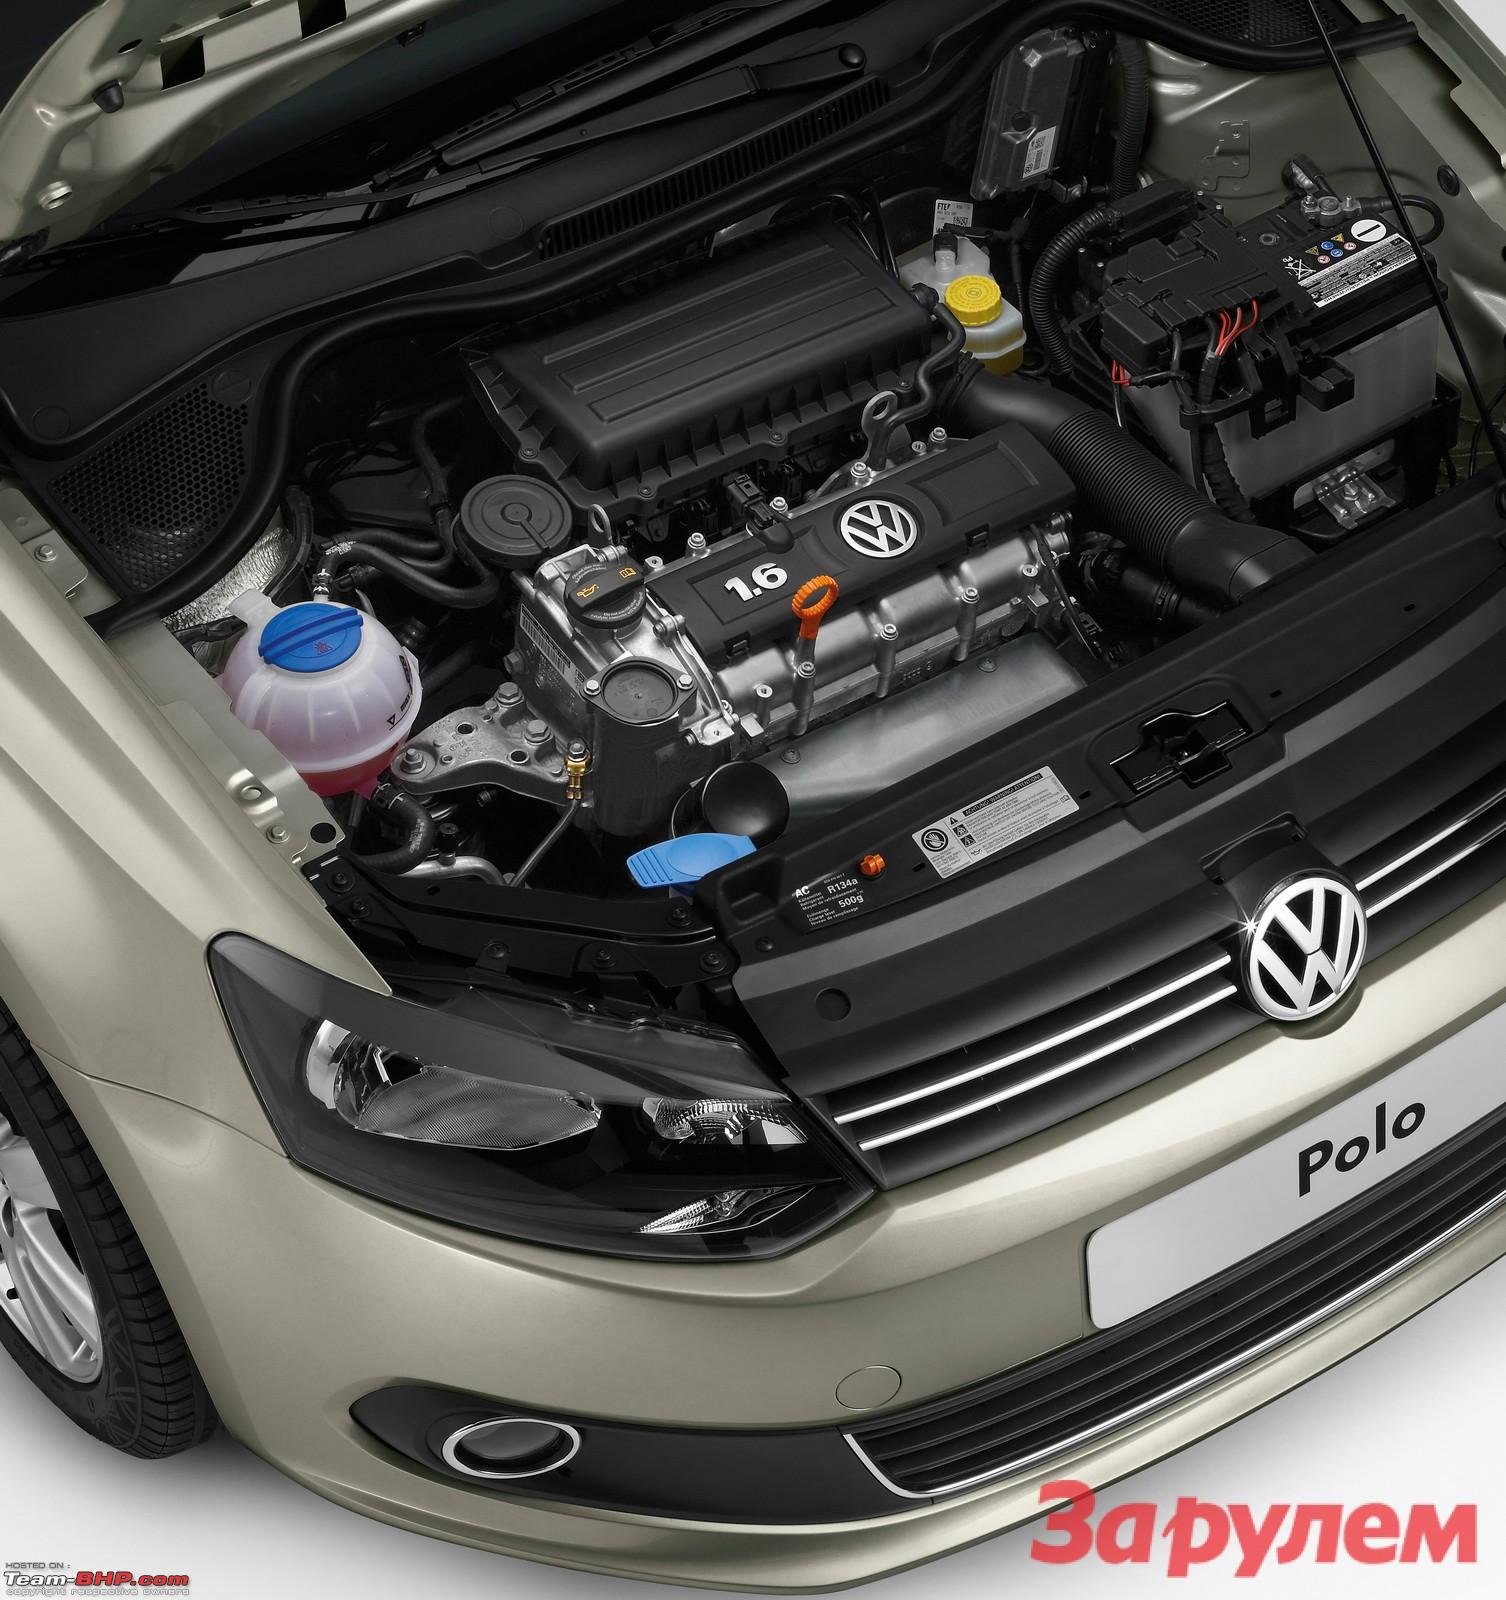 Ремонт двигателя поло. Двигатель Volkswagen Polo sedan 1.6. Volkswagen Polo 2017 двигатель. Движок Volkswagen Polo 1.6 105. Двигатель Фольксваген поло седан 1.6.